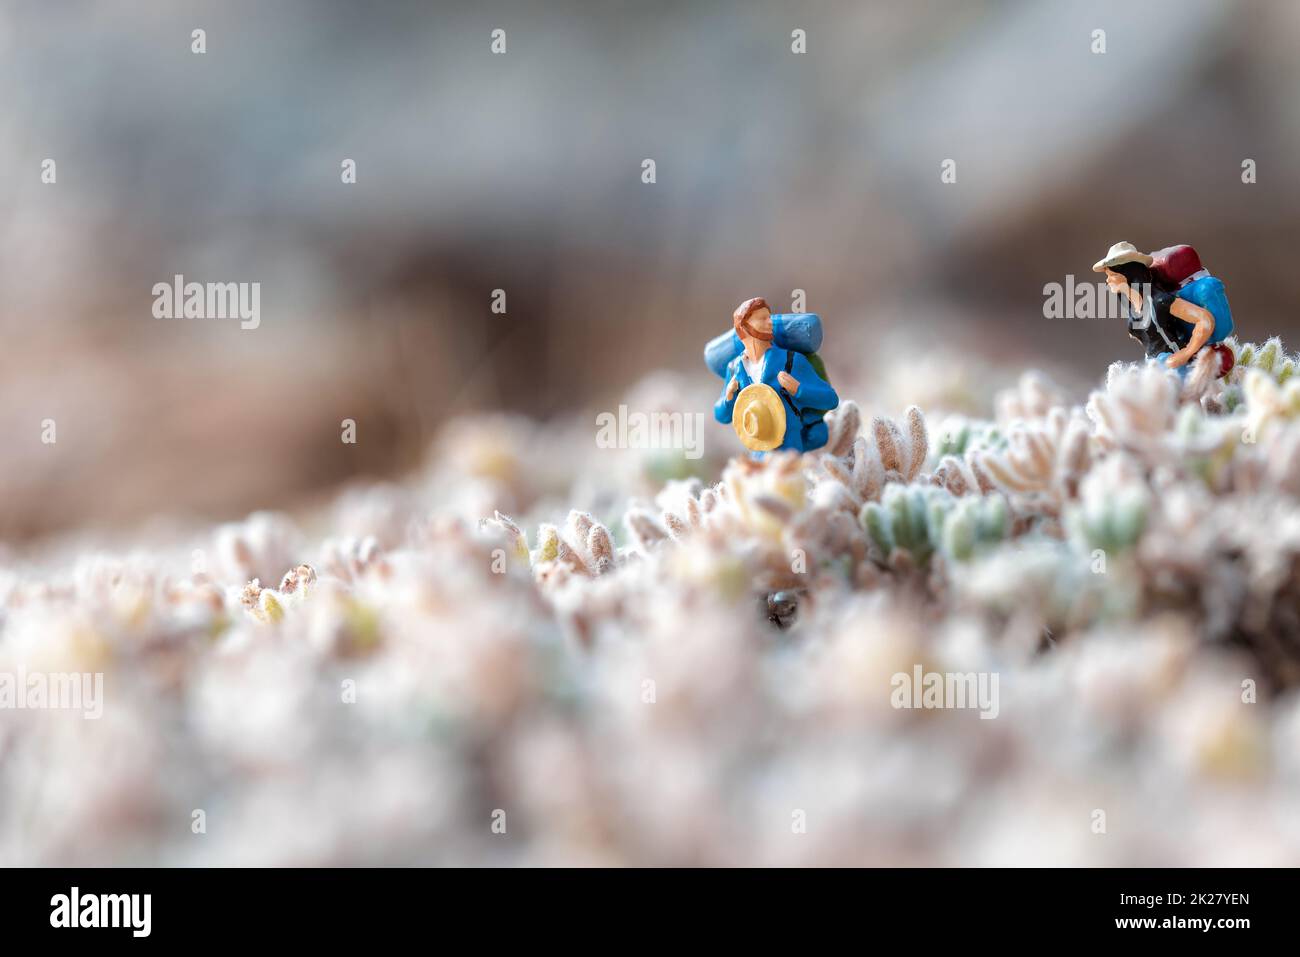 Coppia escursionista in miniatura in un prato. Foto macro Foto Stock